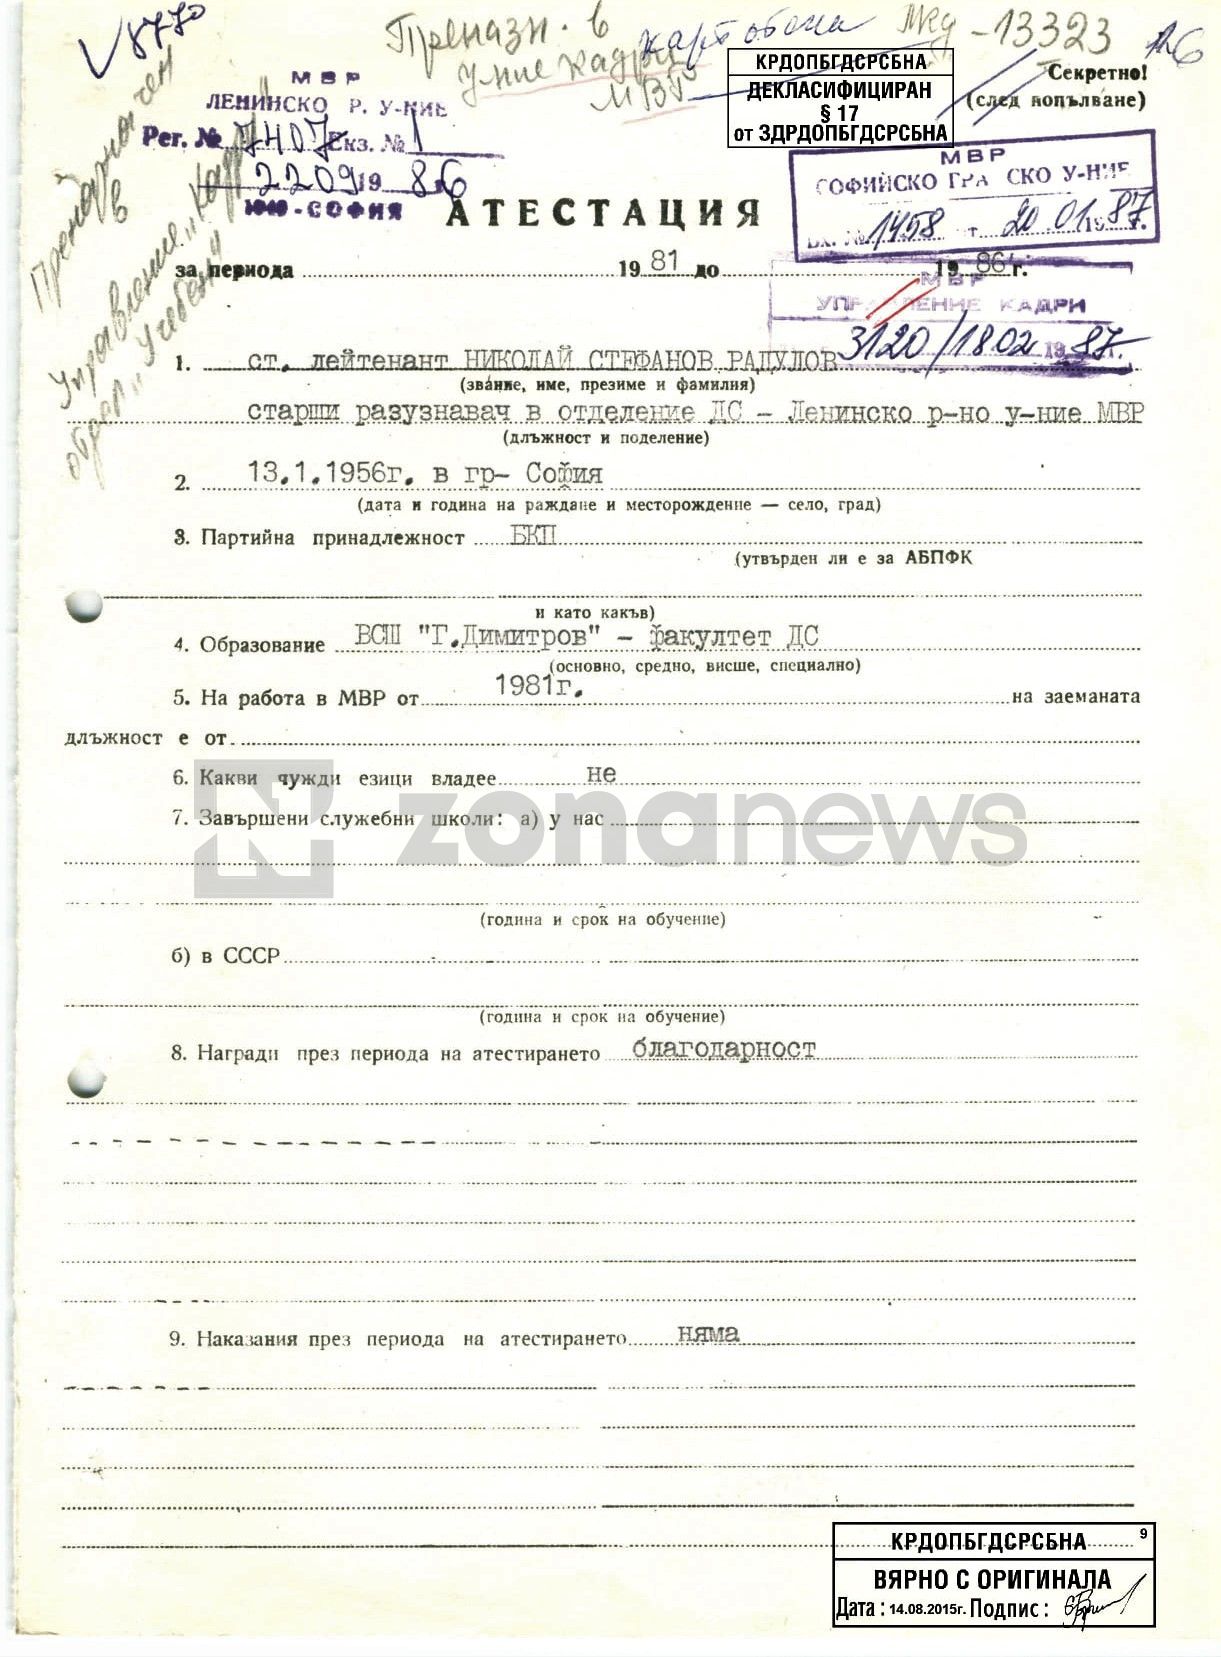 Документи от личното кадрово дело на Н.Радулов като офицер от ДС````